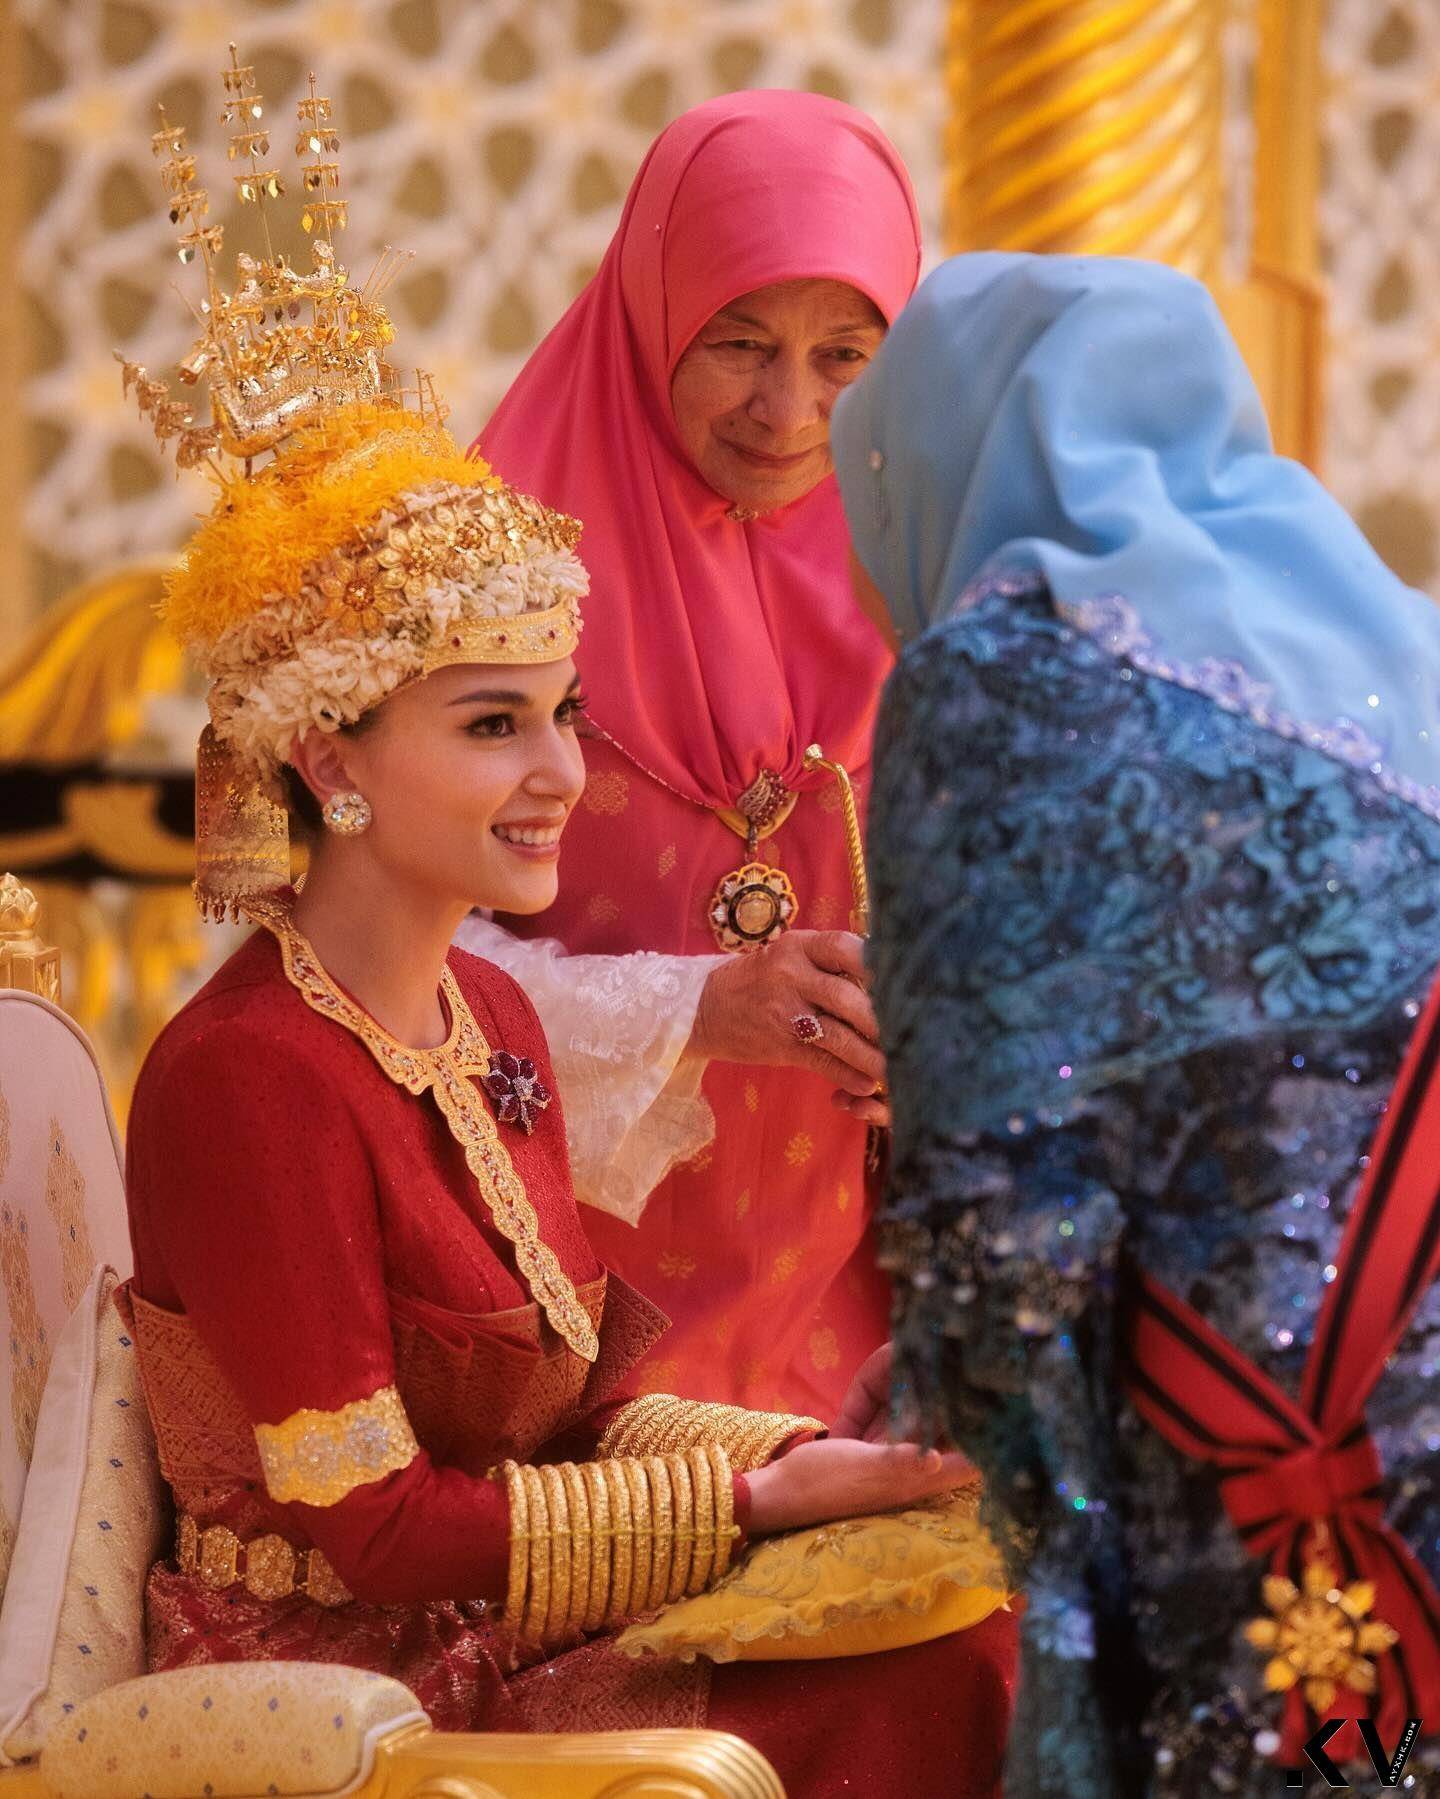 汶莱“亚洲最帅王子”世纪婚礼巨钻闪耀　出卖美娇娘吸奶瓶萌照 时尚穿搭 图5张